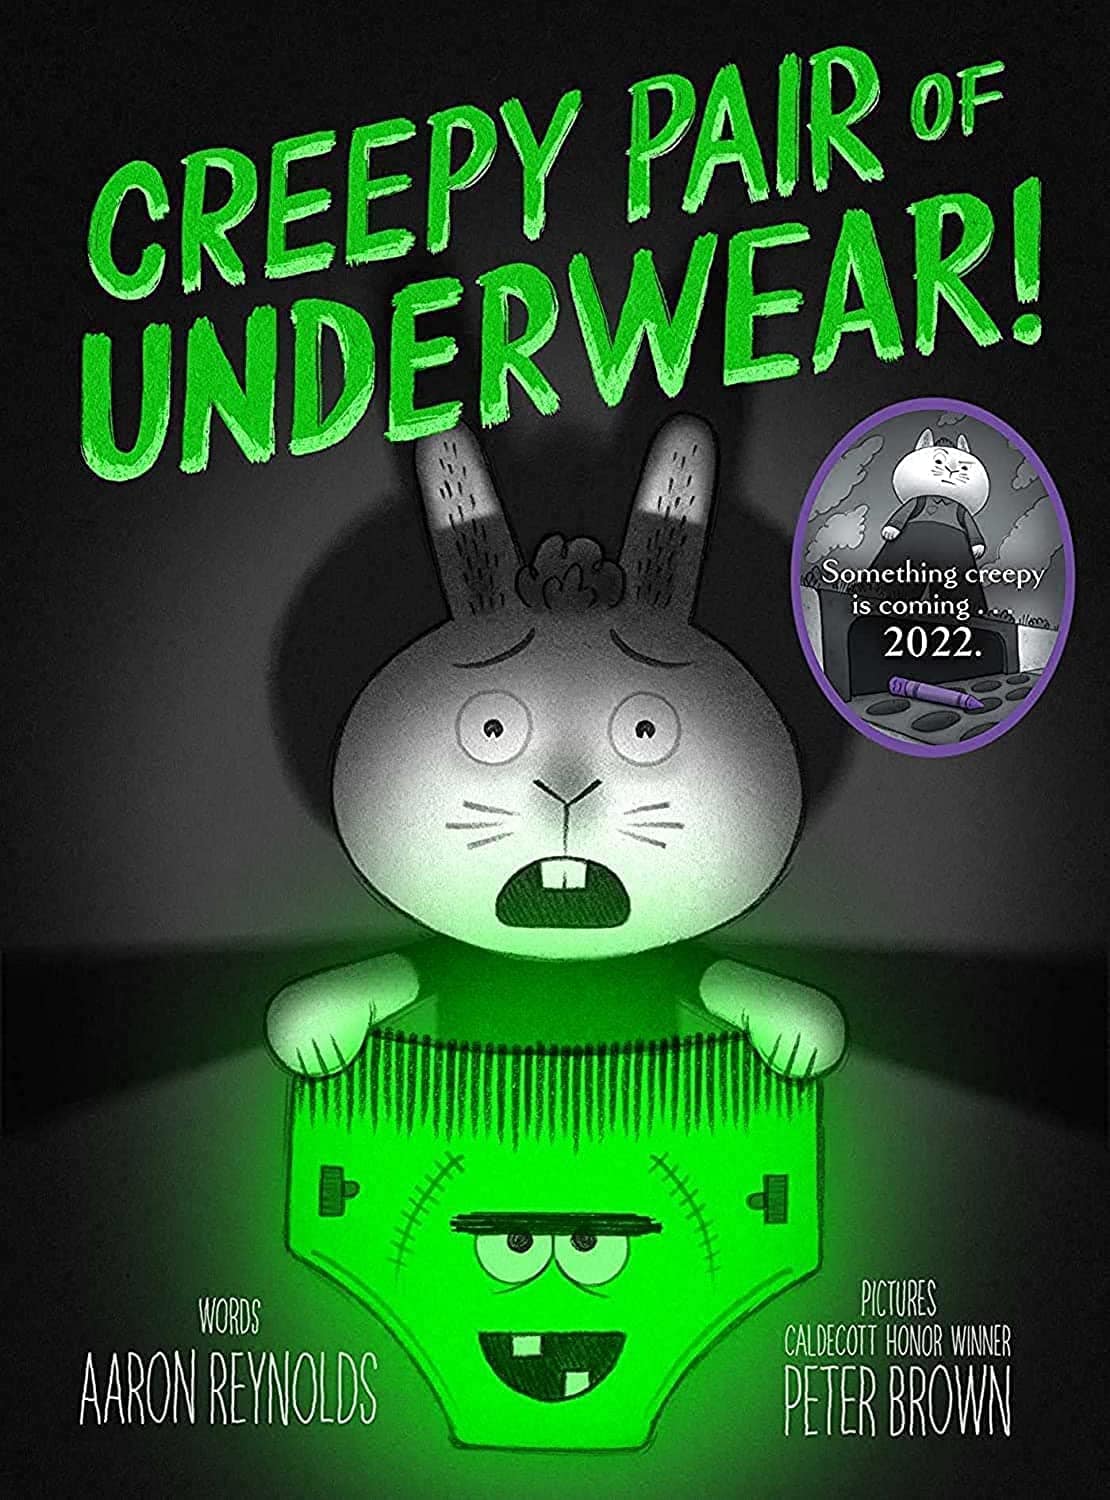 "Creepy Pair of Underwear!" by Aaron Reynolds